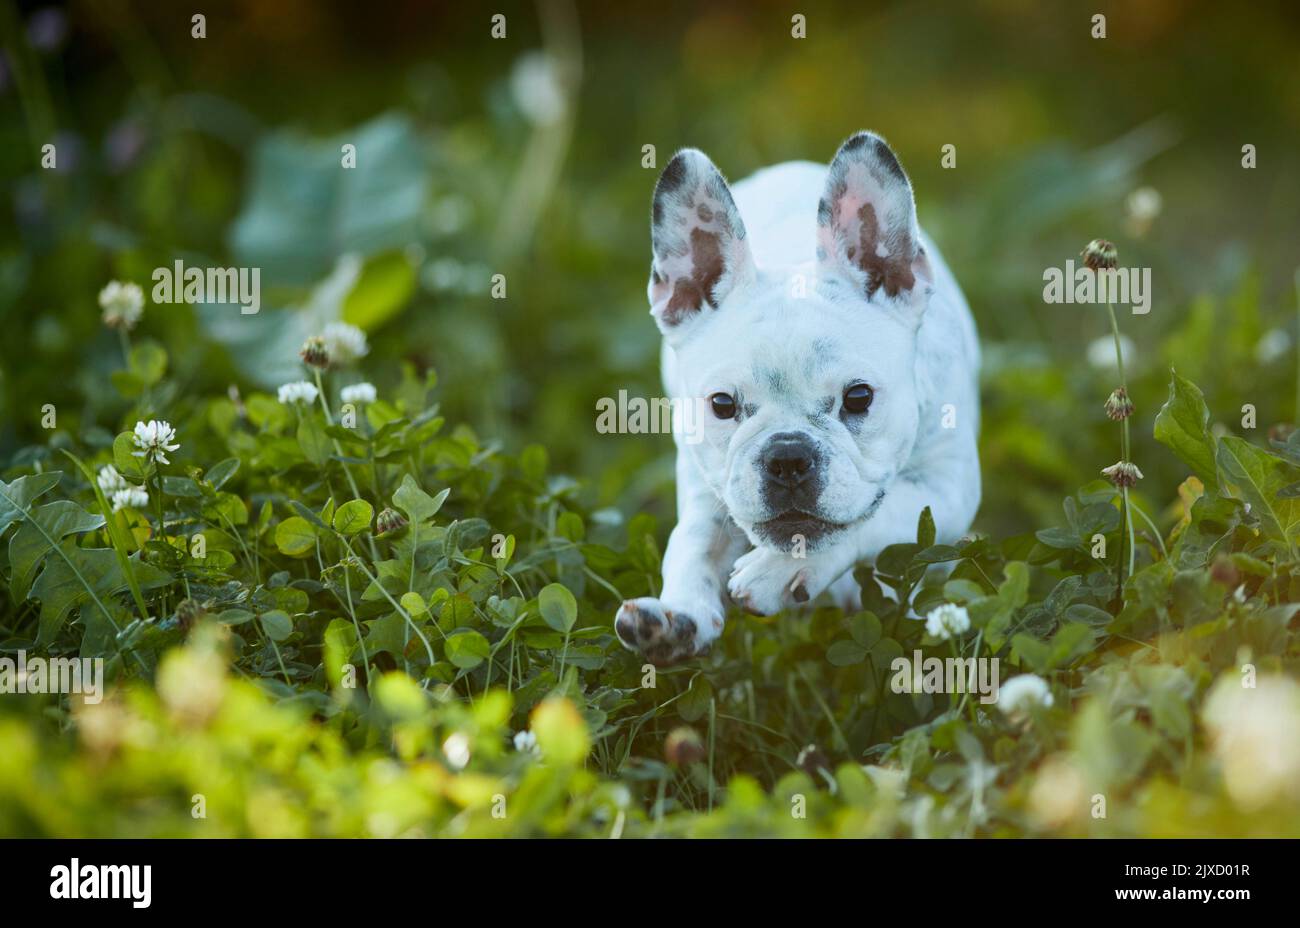 Bulldog français, chiot courant dans un pré. Allemagne Banque D'Images